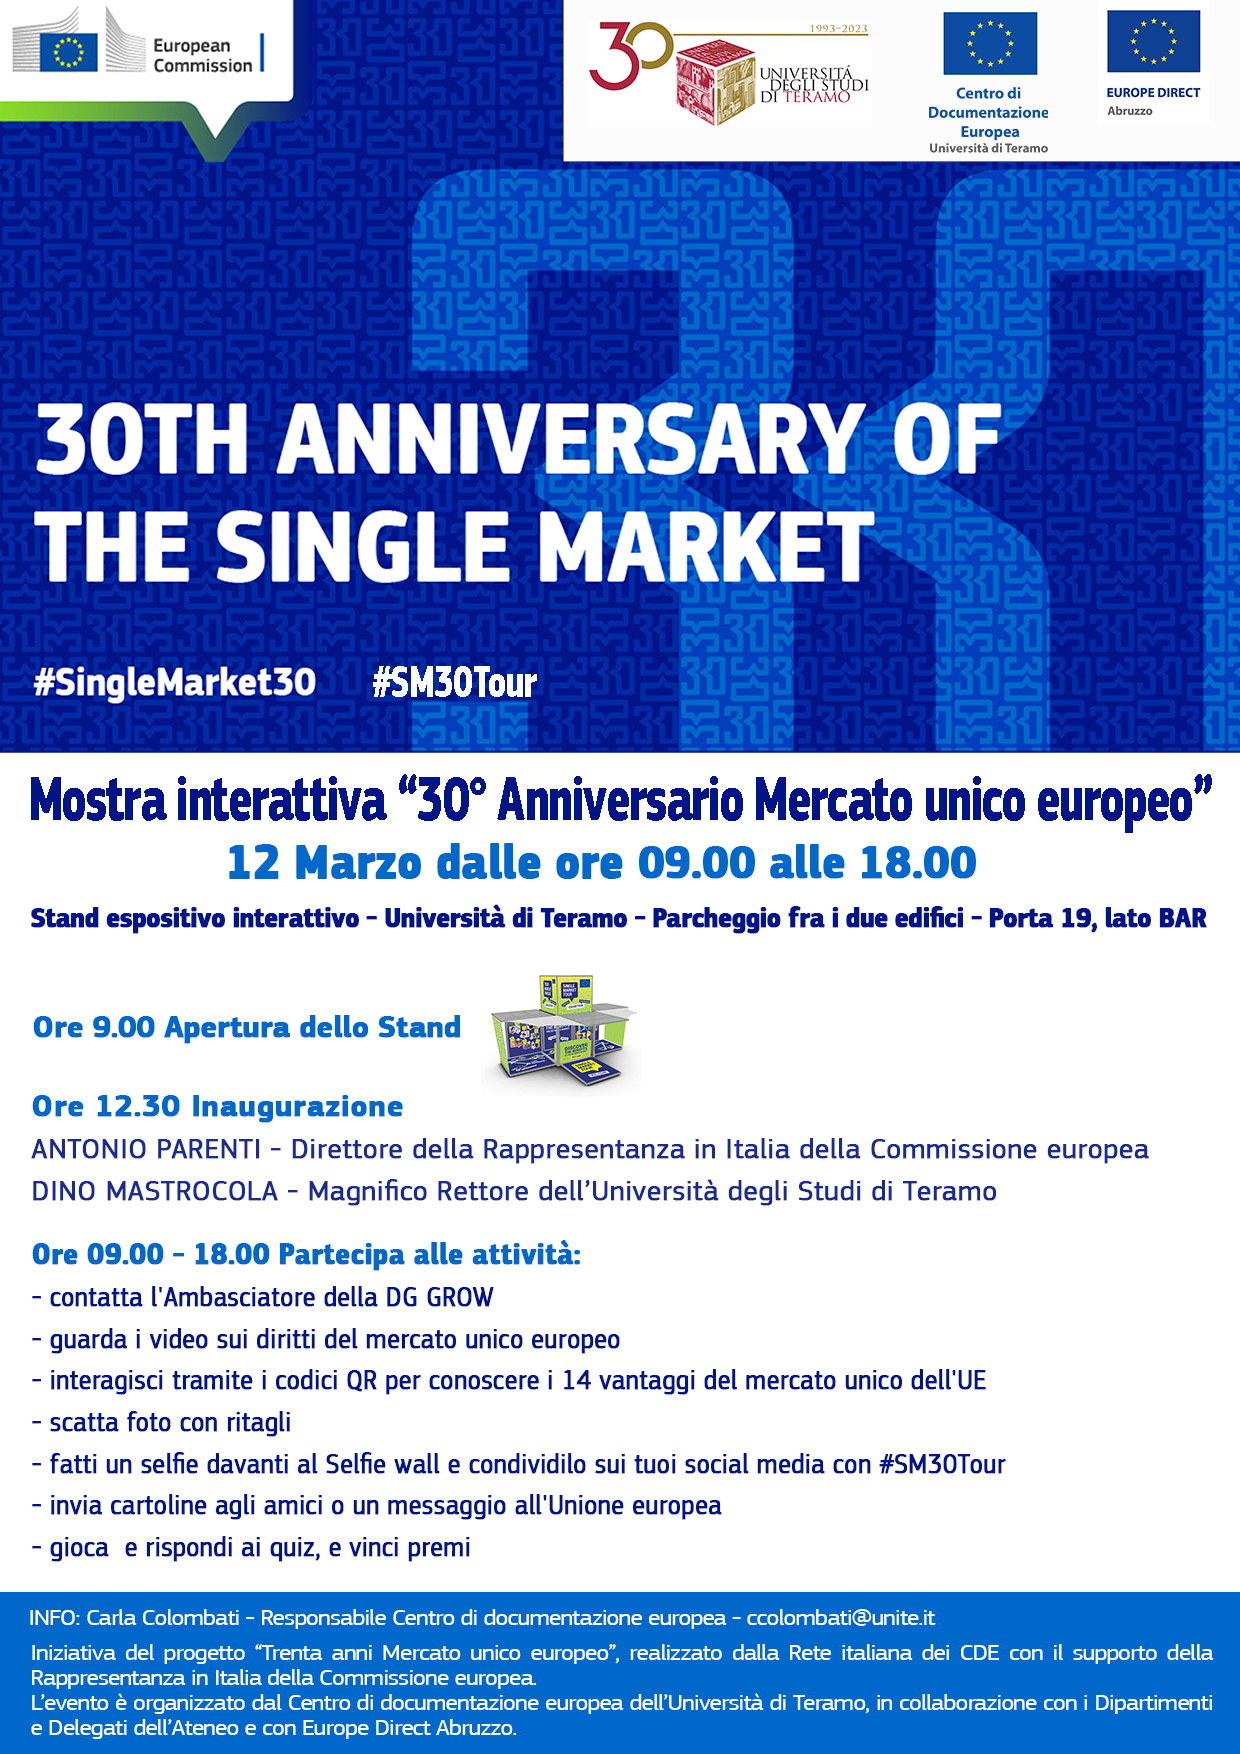 Mostra "30° anniversario del Mercato unico europeo" - Centro di documentazione europea Unversità di Teramo